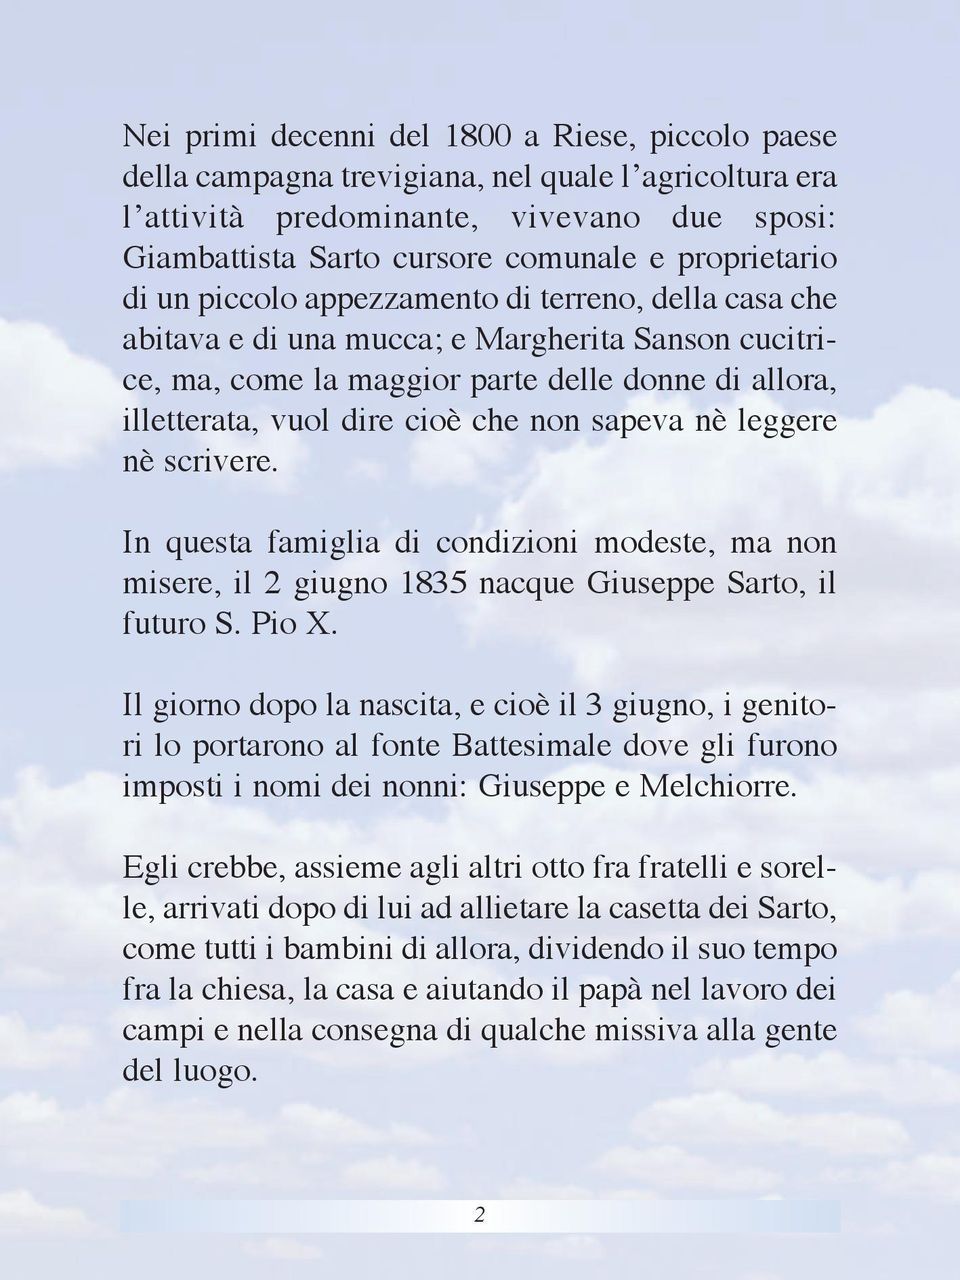 che non sapeva nè leggere nè scrivere. In questa famiglia di condizioni modeste, ma non misere, il 2 giugno 1835 nacque Giuseppe Sarto, il futuro S. Pio X.